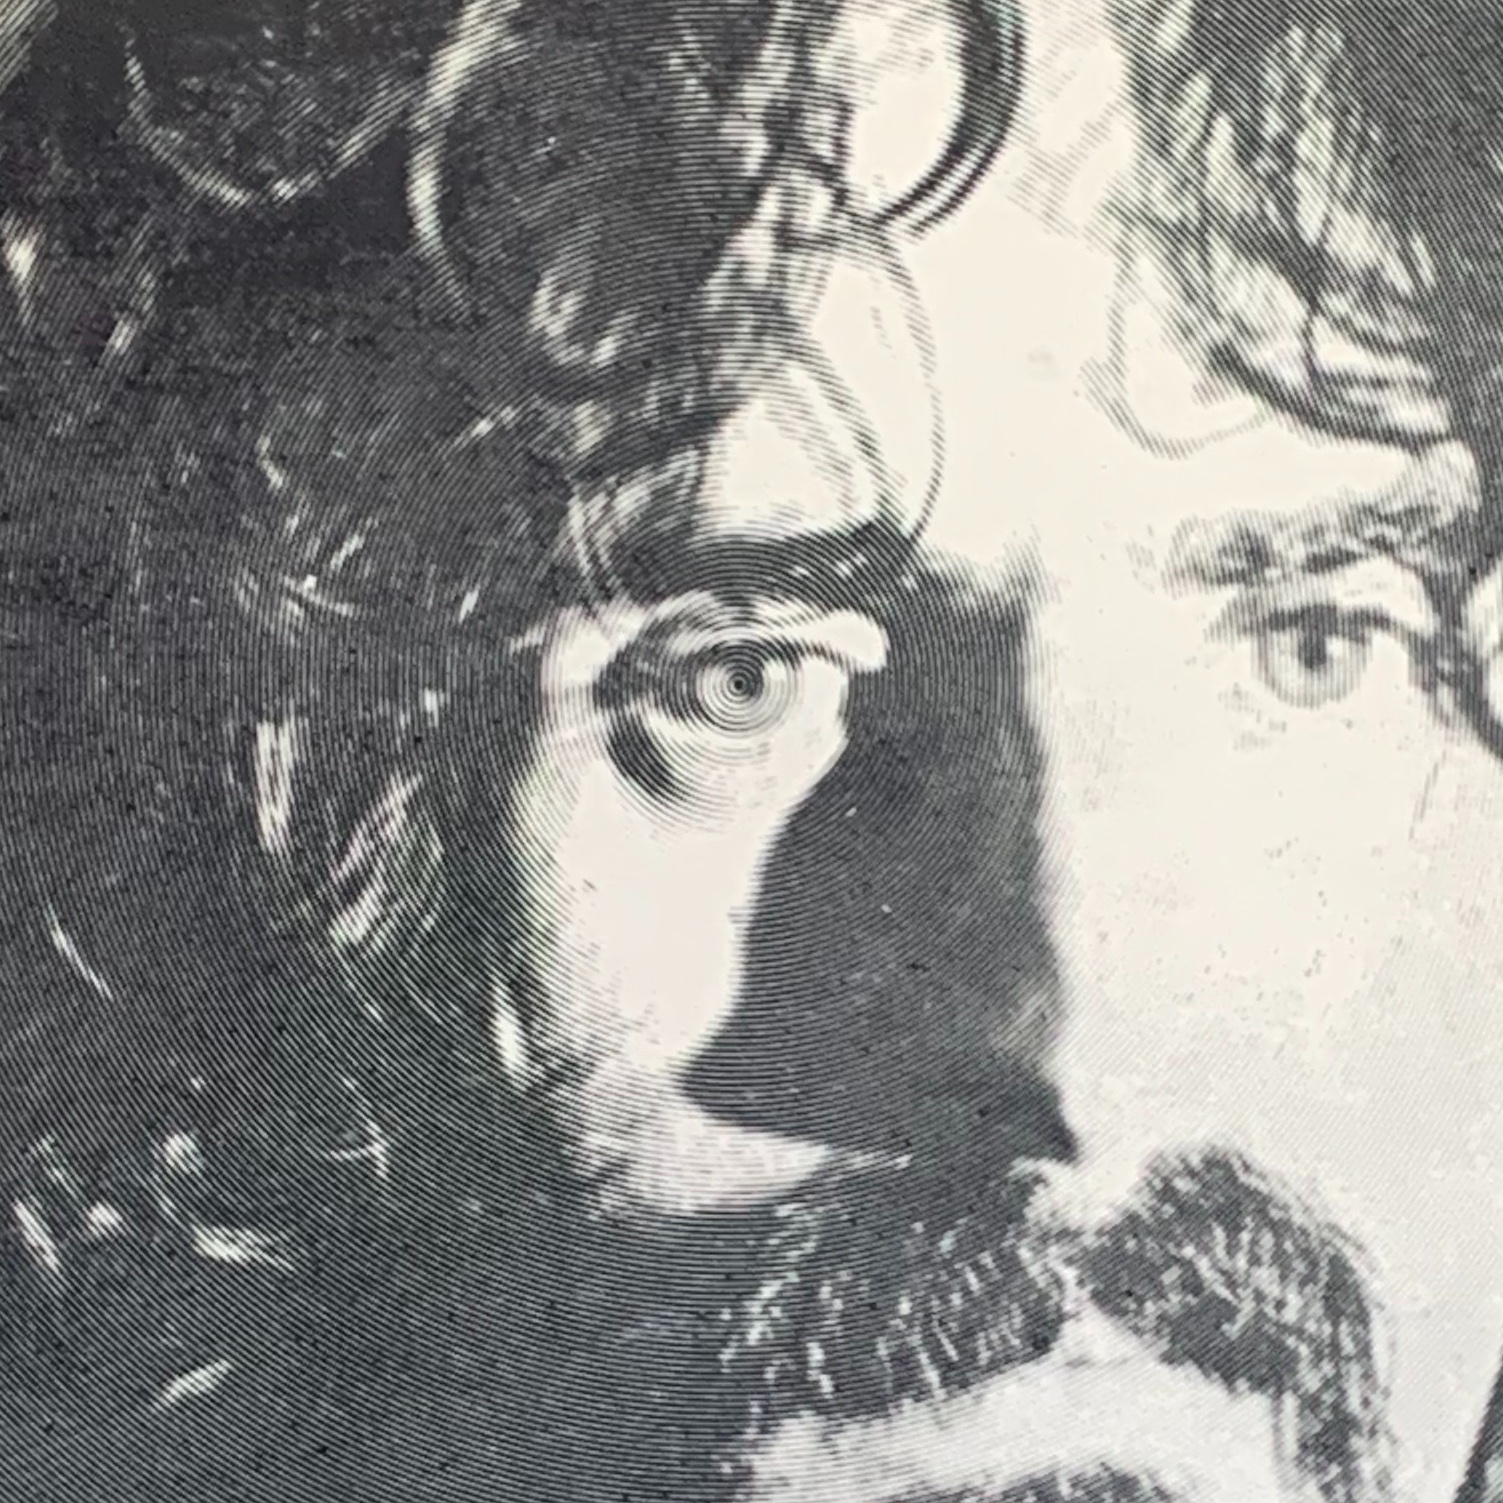 Memperbesar gambar gradien radial pada mata Zappa di Sepenuhnya Gratis